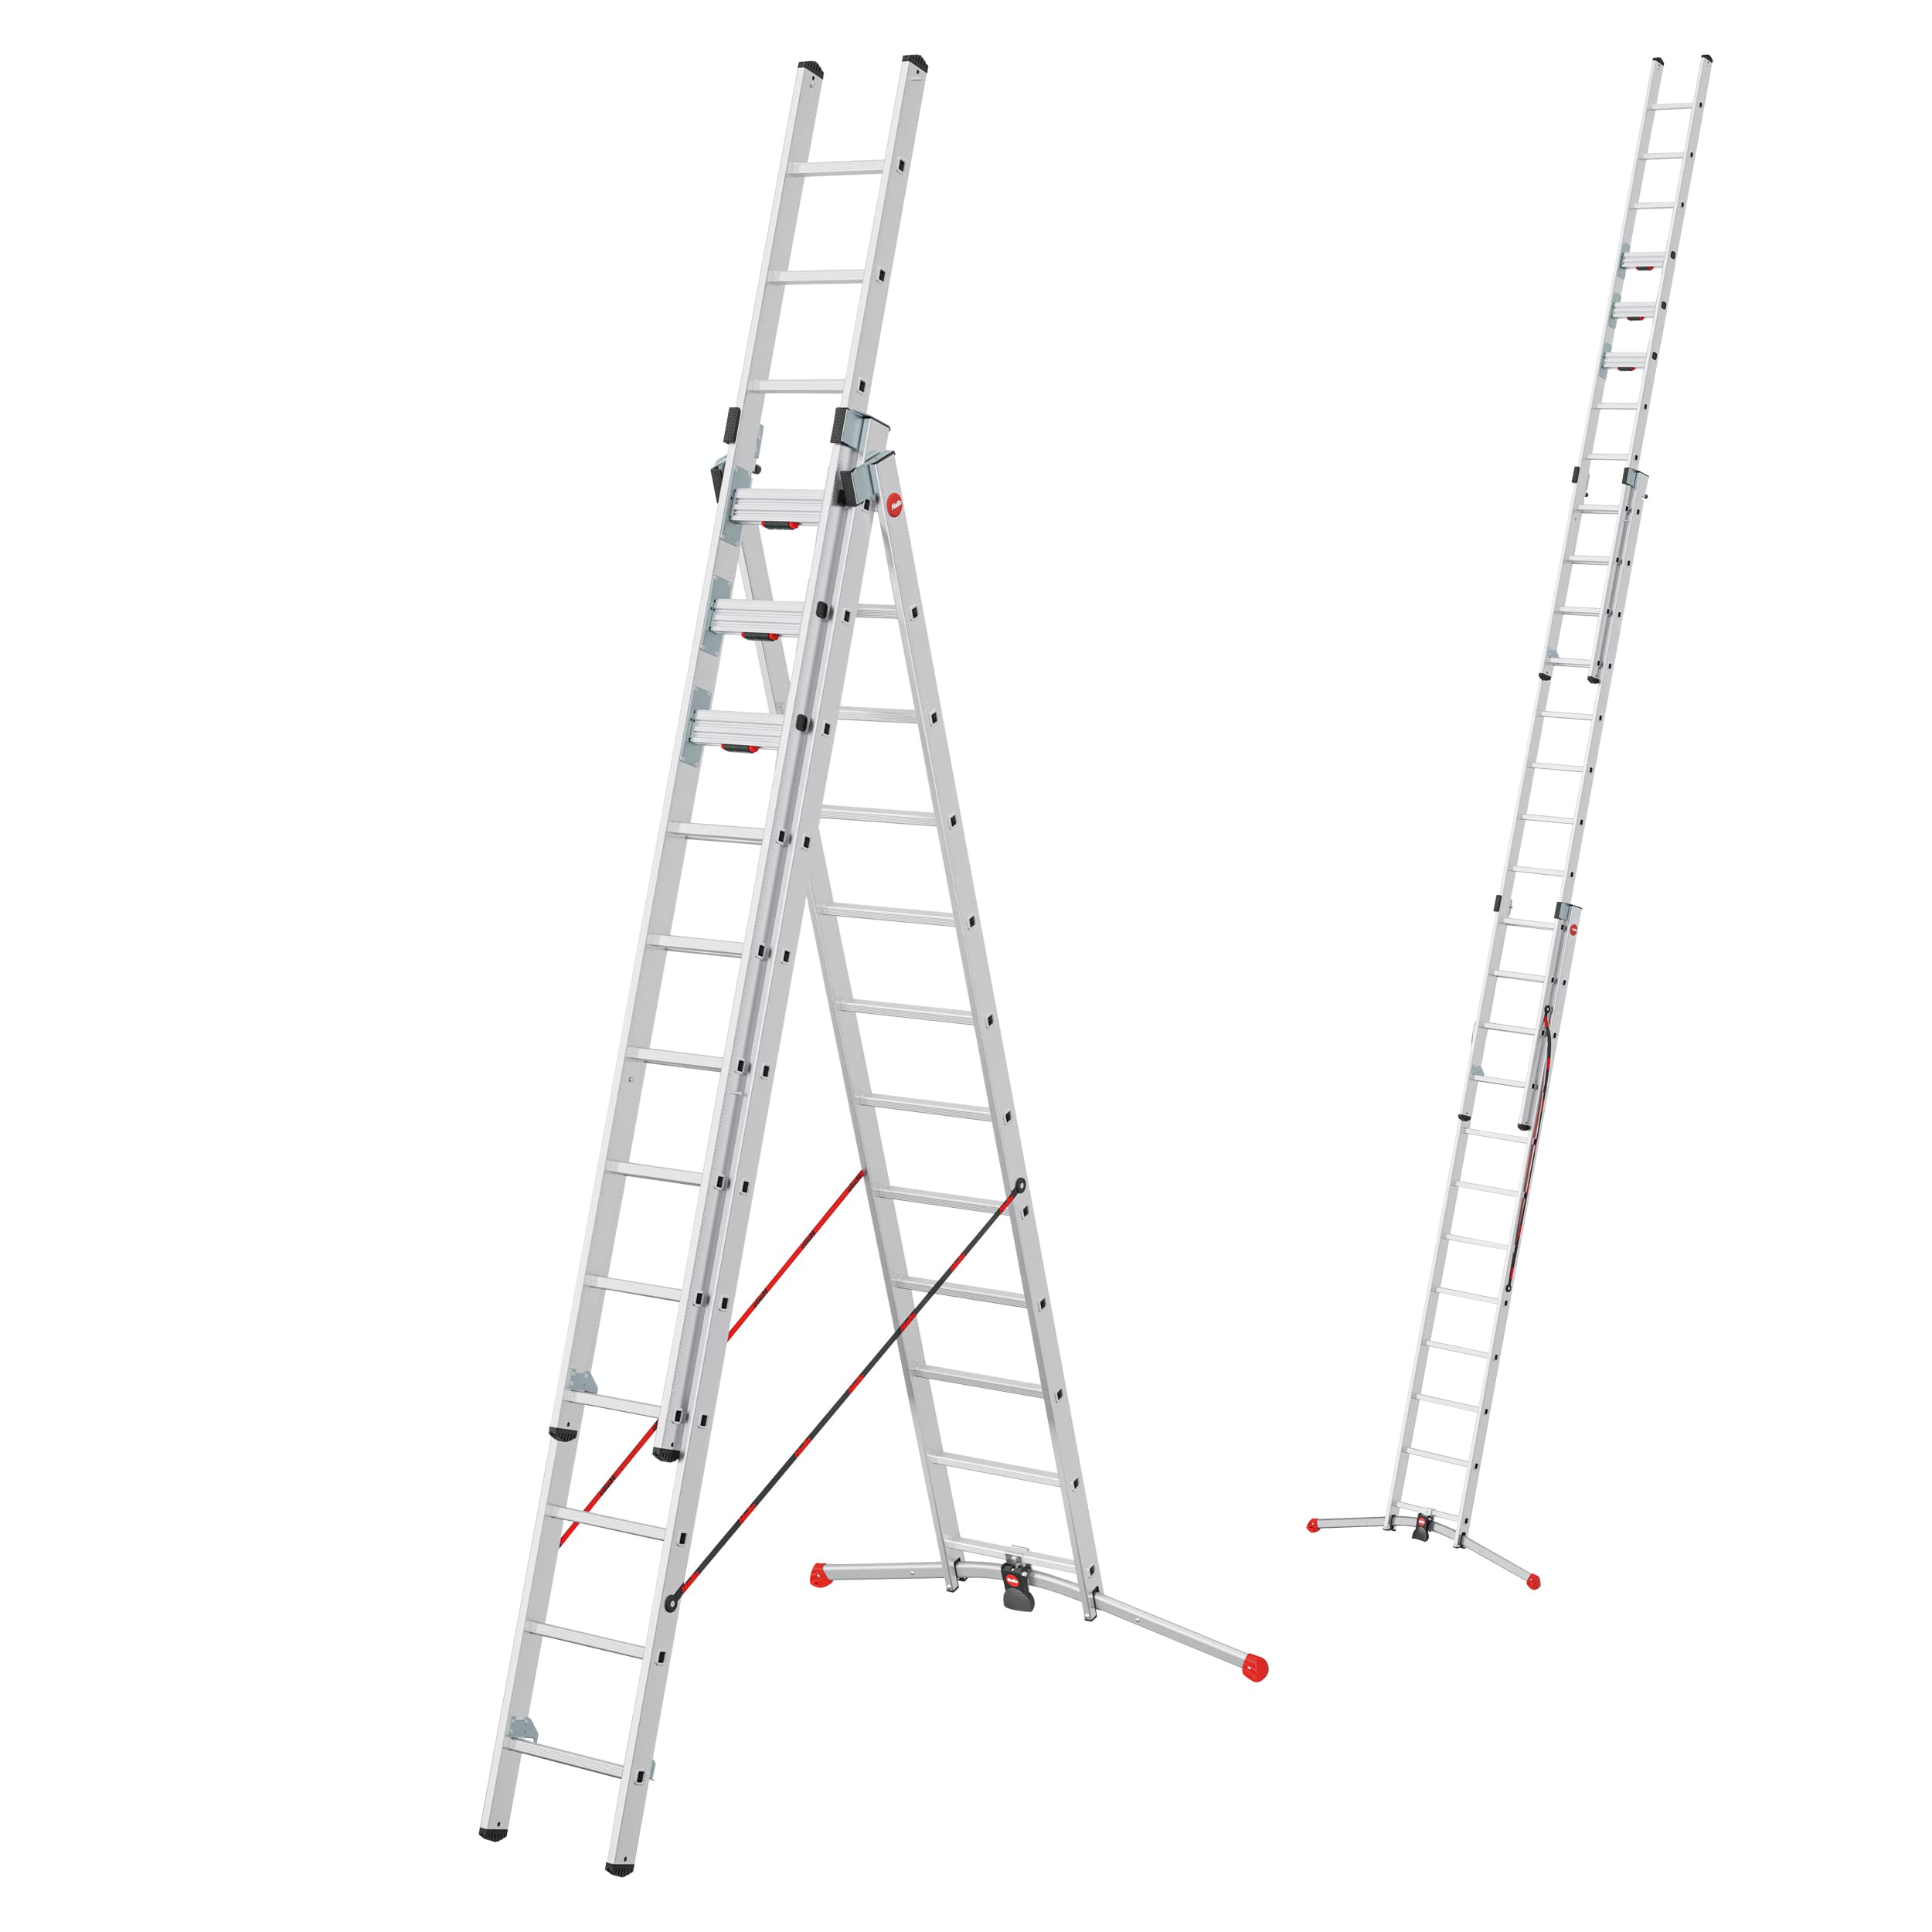 Hailo S120 Pro Mehrzweckleiter - 3-teilige, TRBS-konforme und klappbare Aluminium-Leiter - als Schiebe-, Bock- und Anlegeleiter nutzbar - Höhe bis 7,85 m - Gewicht: 34 kg